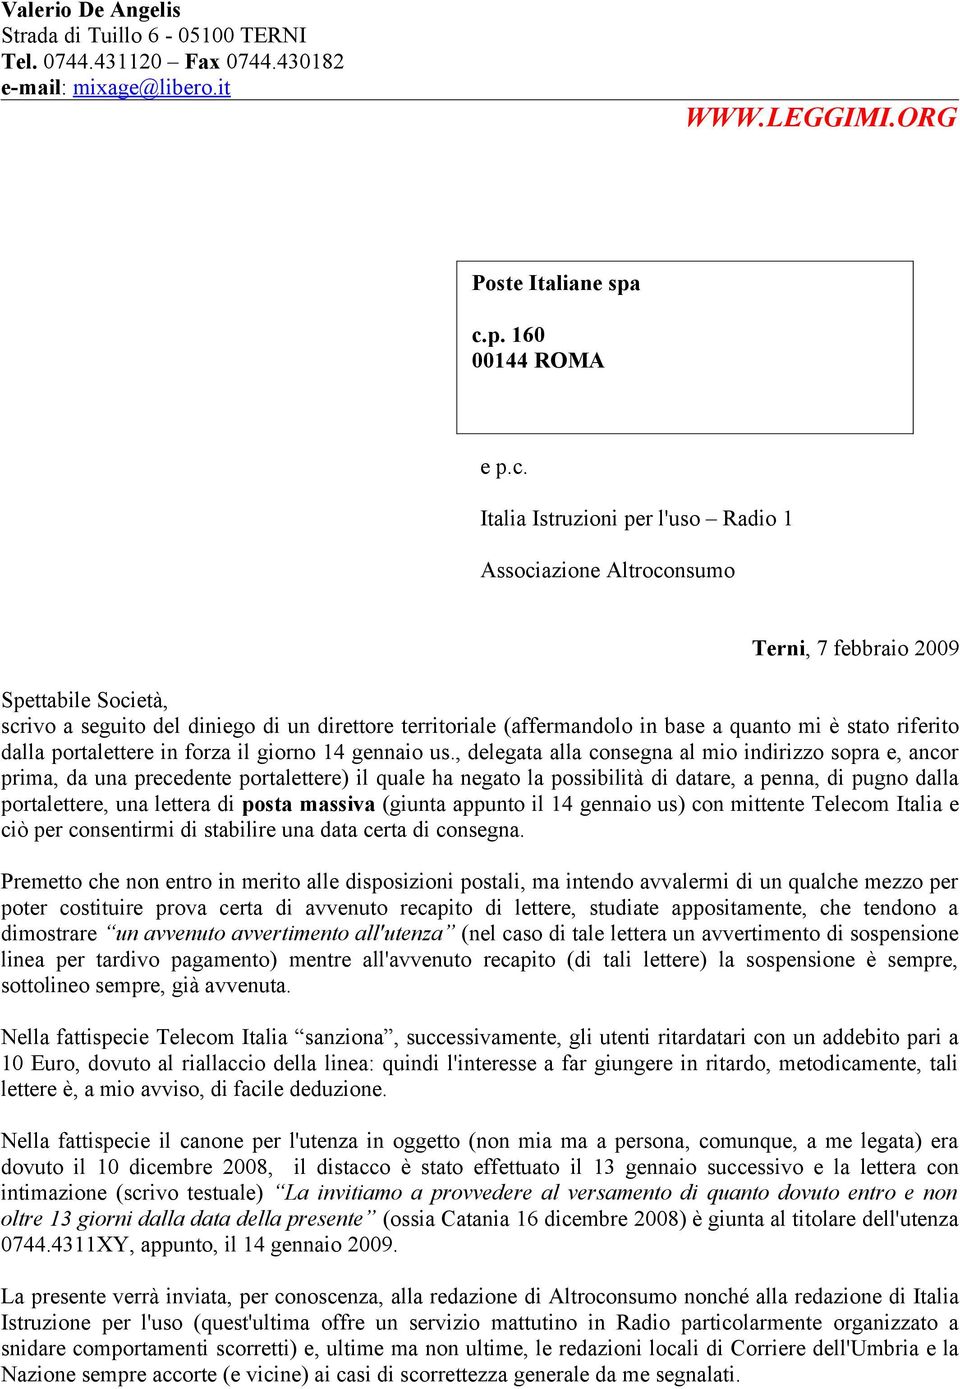 Italia Istruzioni per l'uso Radio 1 Associazione Altroconsumo Terni, 7 febbraio 2009 Spettabile Società, scrivo a seguito del diniego di un direttore territoriale (affermandolo in base a quanto mi è